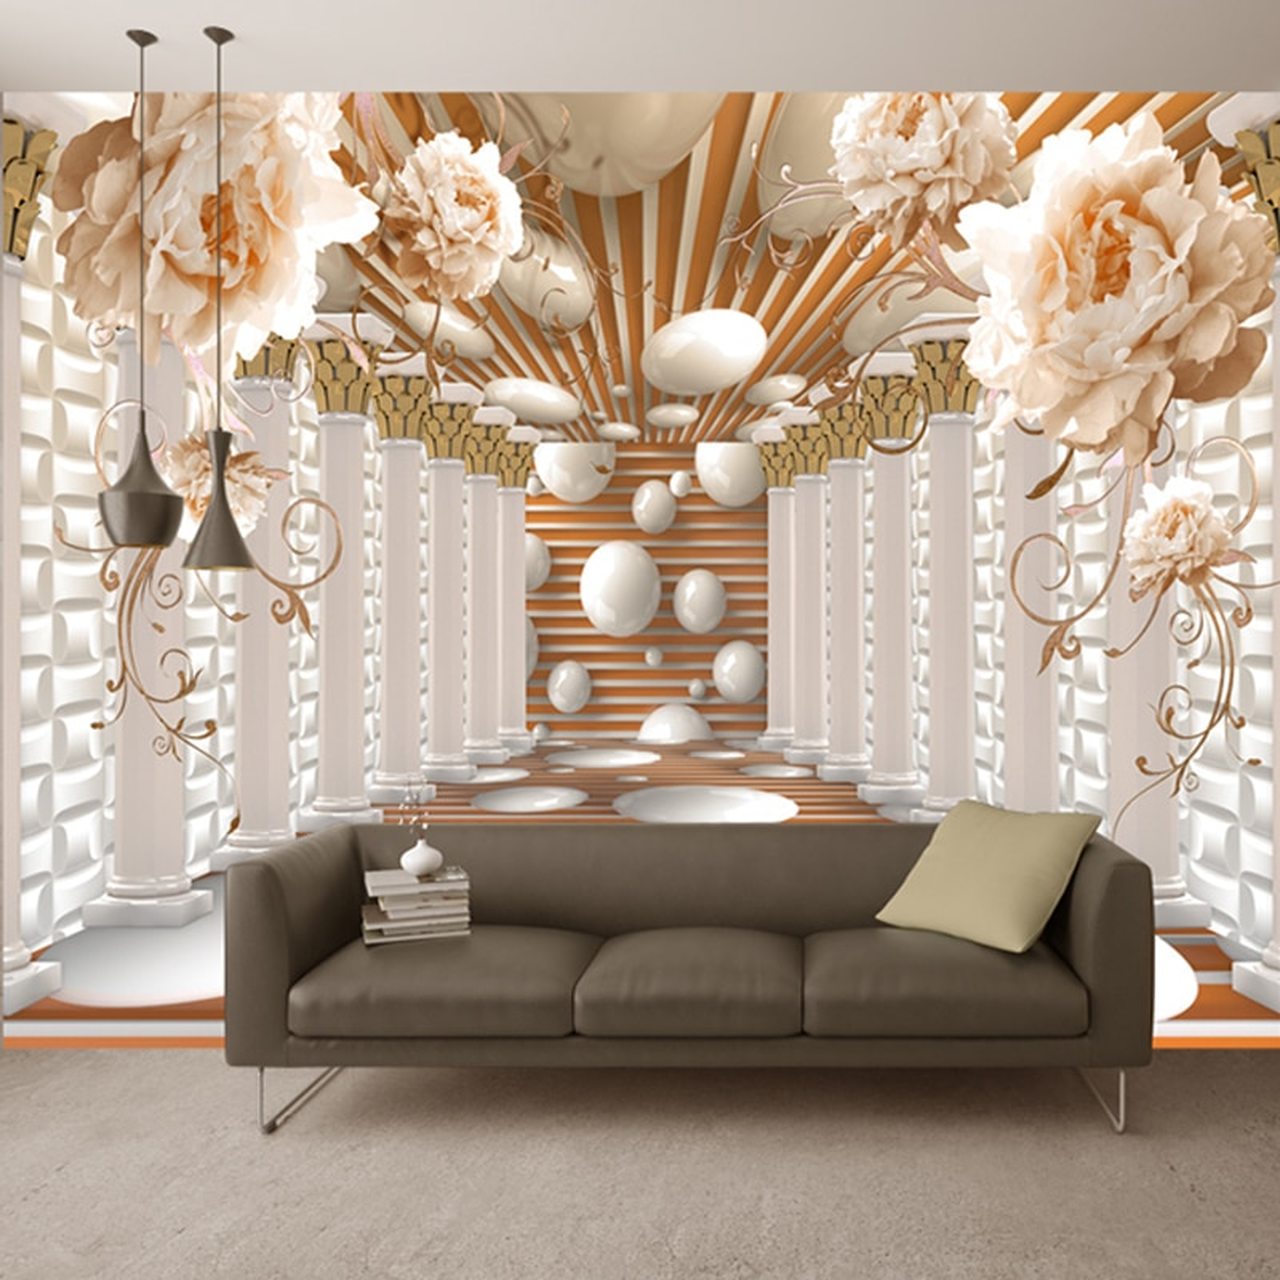 3d Wallpaper For Living Room Modern - 1280x1280 Wallpaper 